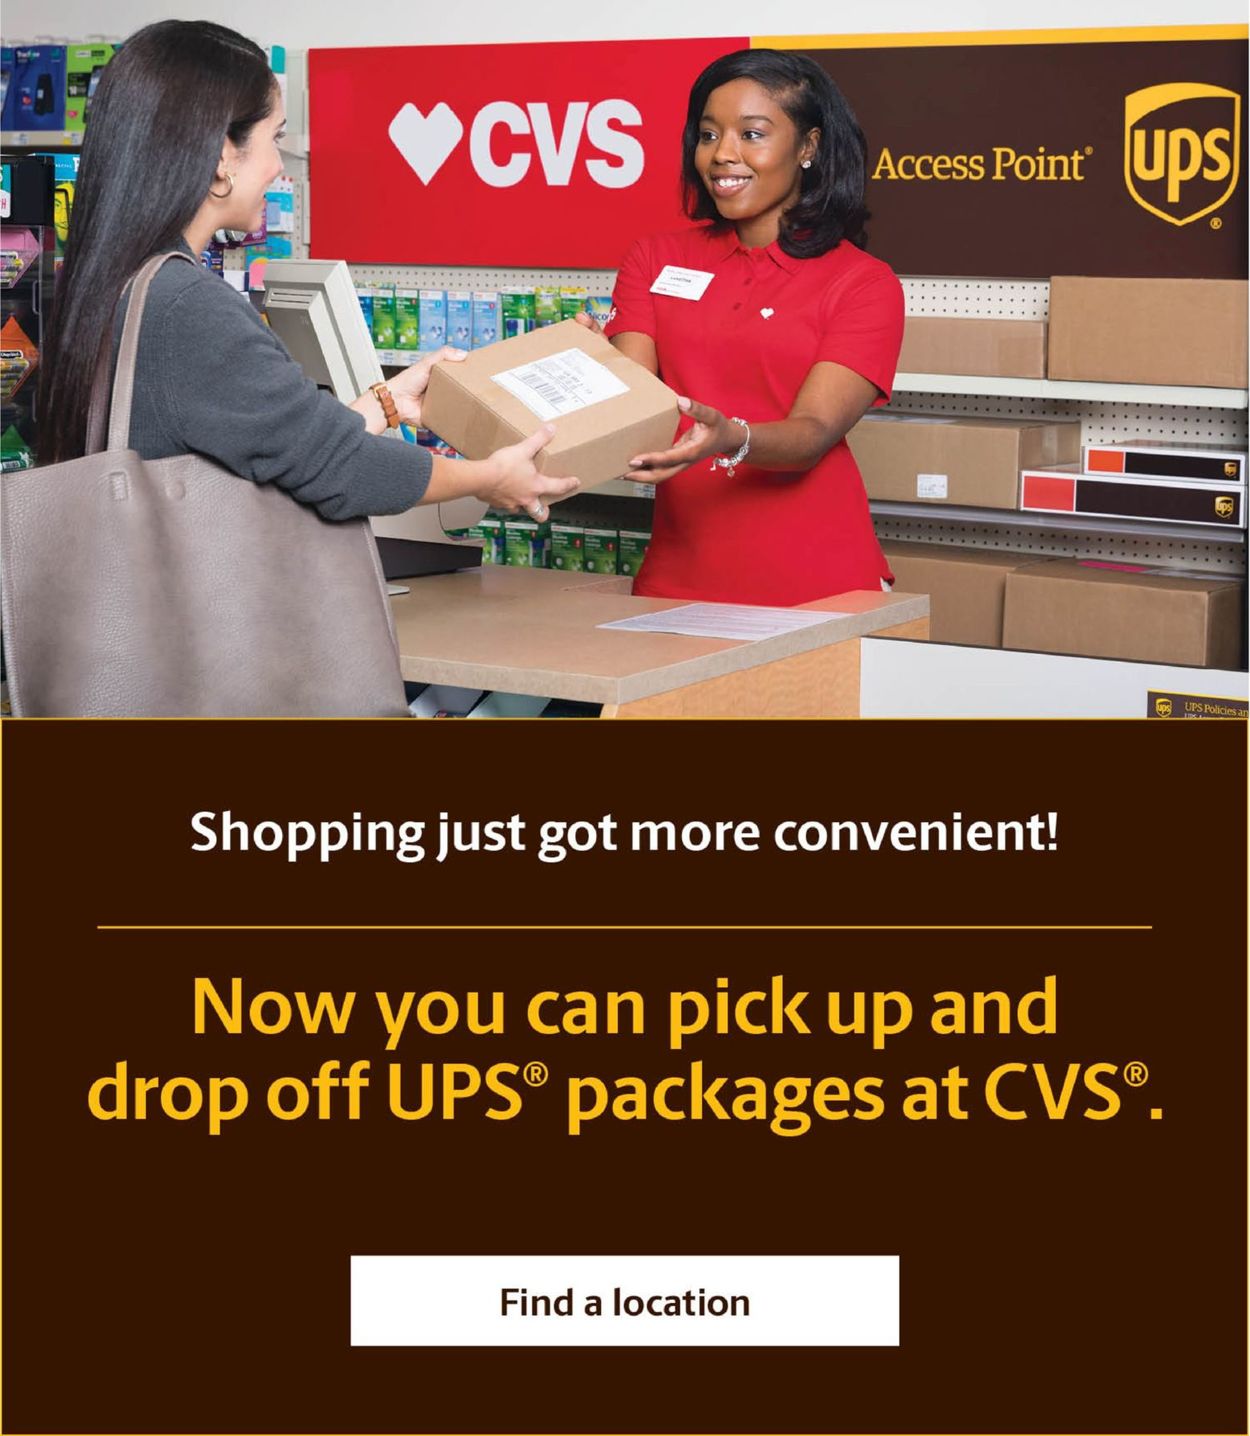 CVS Pharmacy Ad from 08/30/2020